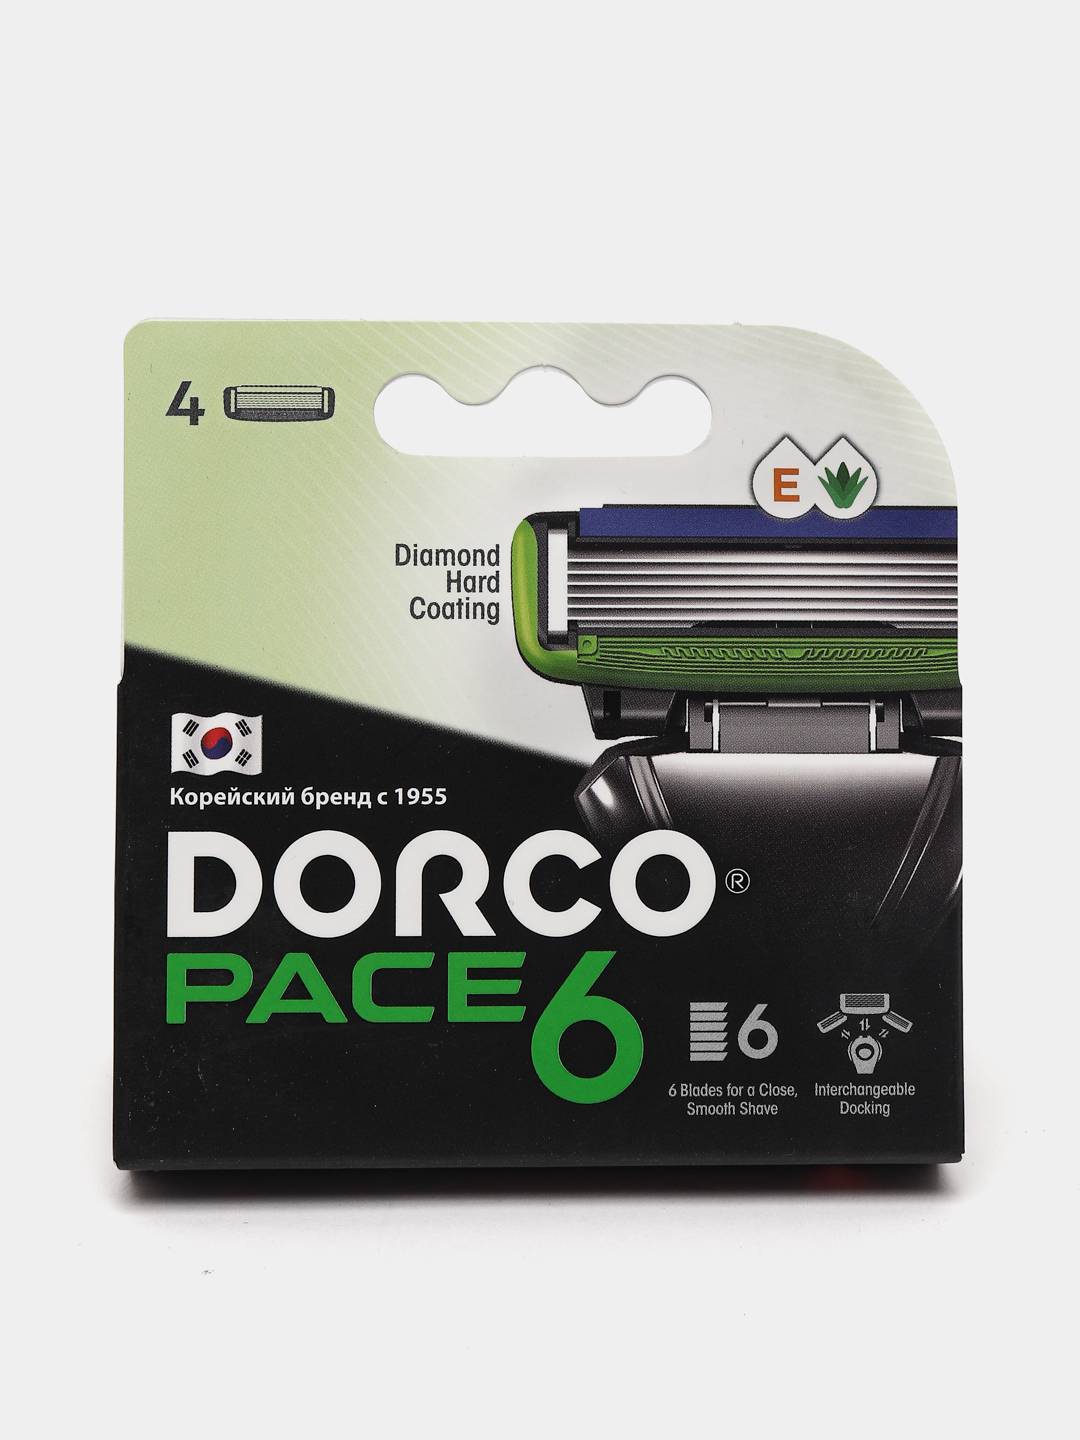 Кассеты dorco. Кассеты Дорко Пейс 6. Dorco Pace 6 кассеты. Кассеты на станок Дорко 4 лезвиями 4 шт. Dorco Pace 3 Cross.